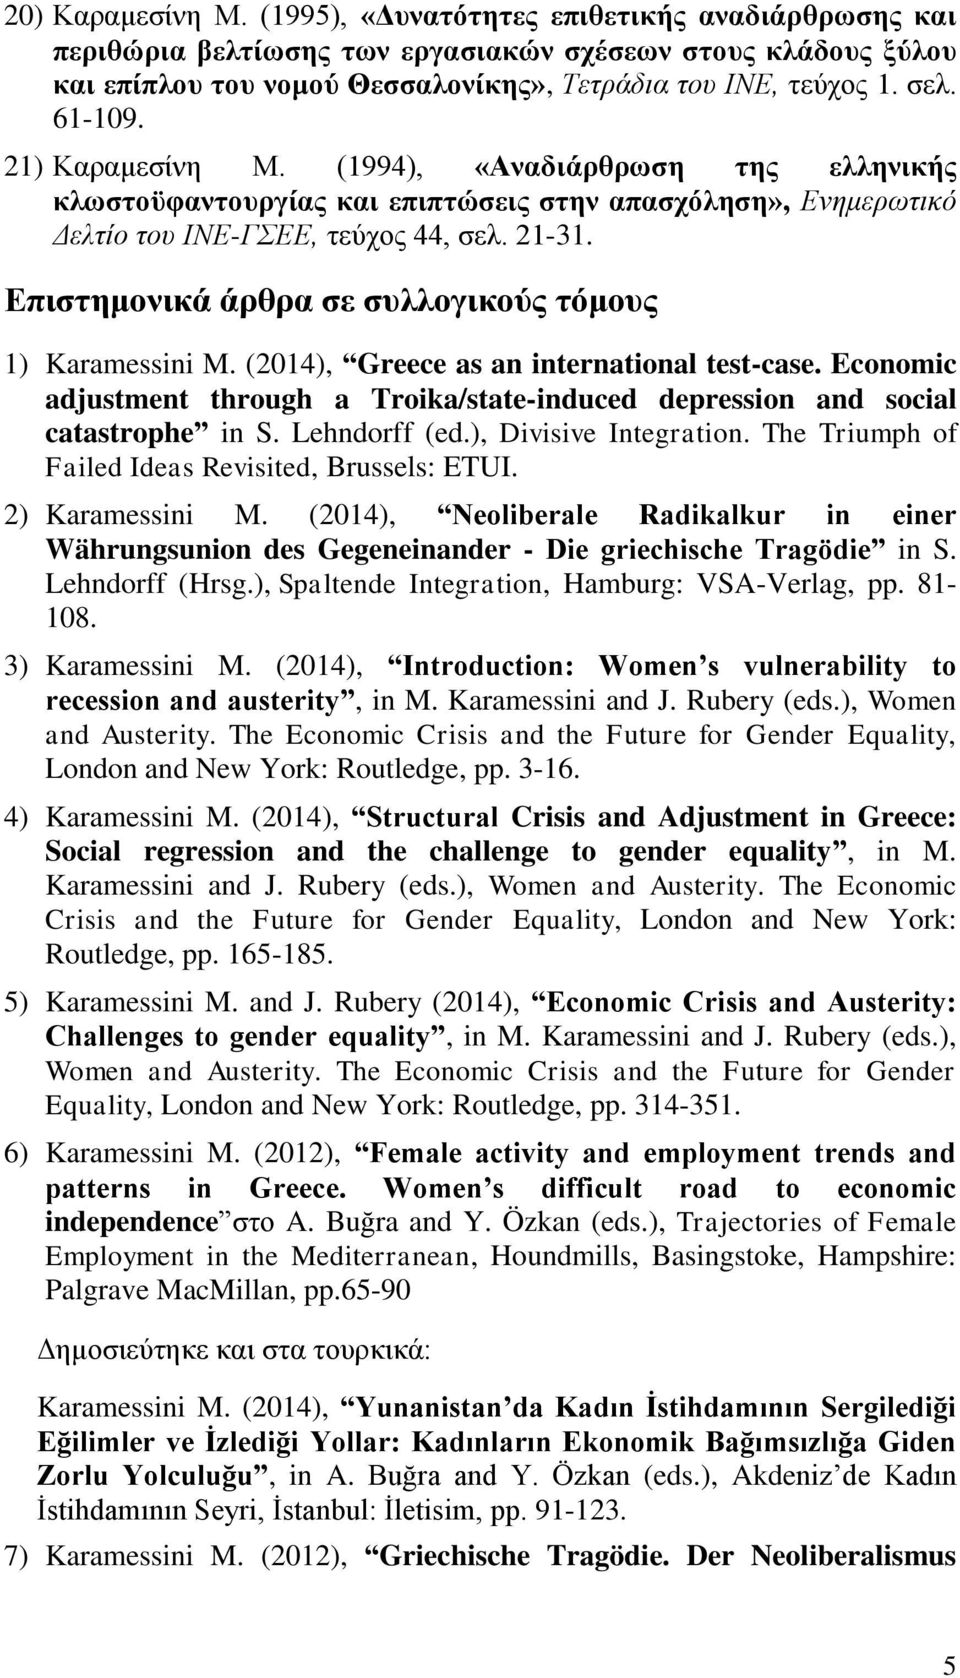 Επιστημονικά άρθρα σε συλλογικούς τόμους 1) Karamessini M. (2014), Greece as an international test-case. Economic adjustment through a Troika/state-induced depression and social catastrophe in S.